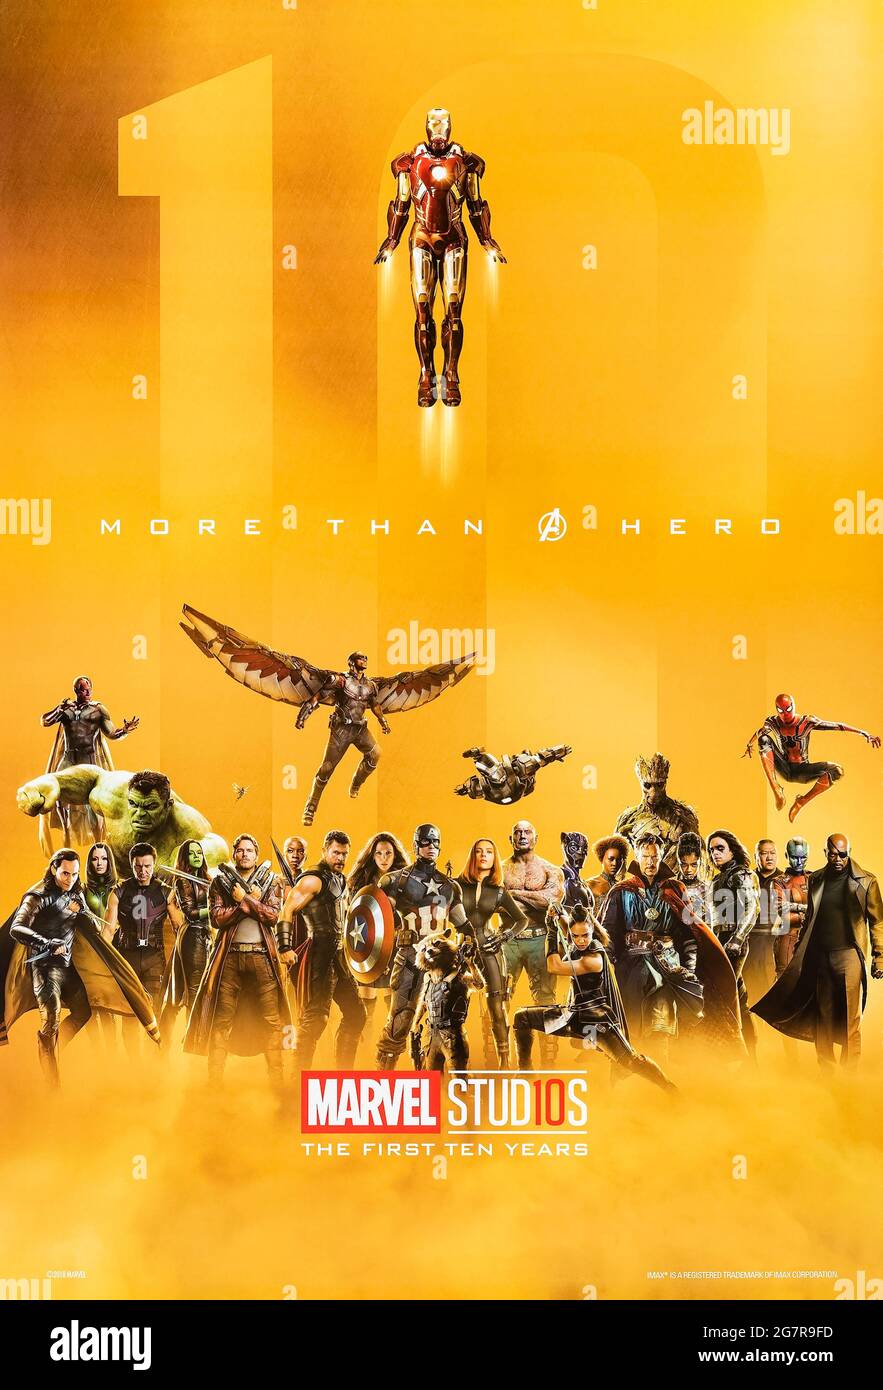 Affiche de 2018 intitulée « plus qu'UN héros - Marvel Studios les dix premières années » célébrant les 10 premières années de l'univers cinématographique de Marvel montrant tous les super-héros qui sont apparus dans les 20 longs métrages sortis jusqu'à présent. Banque D'Images